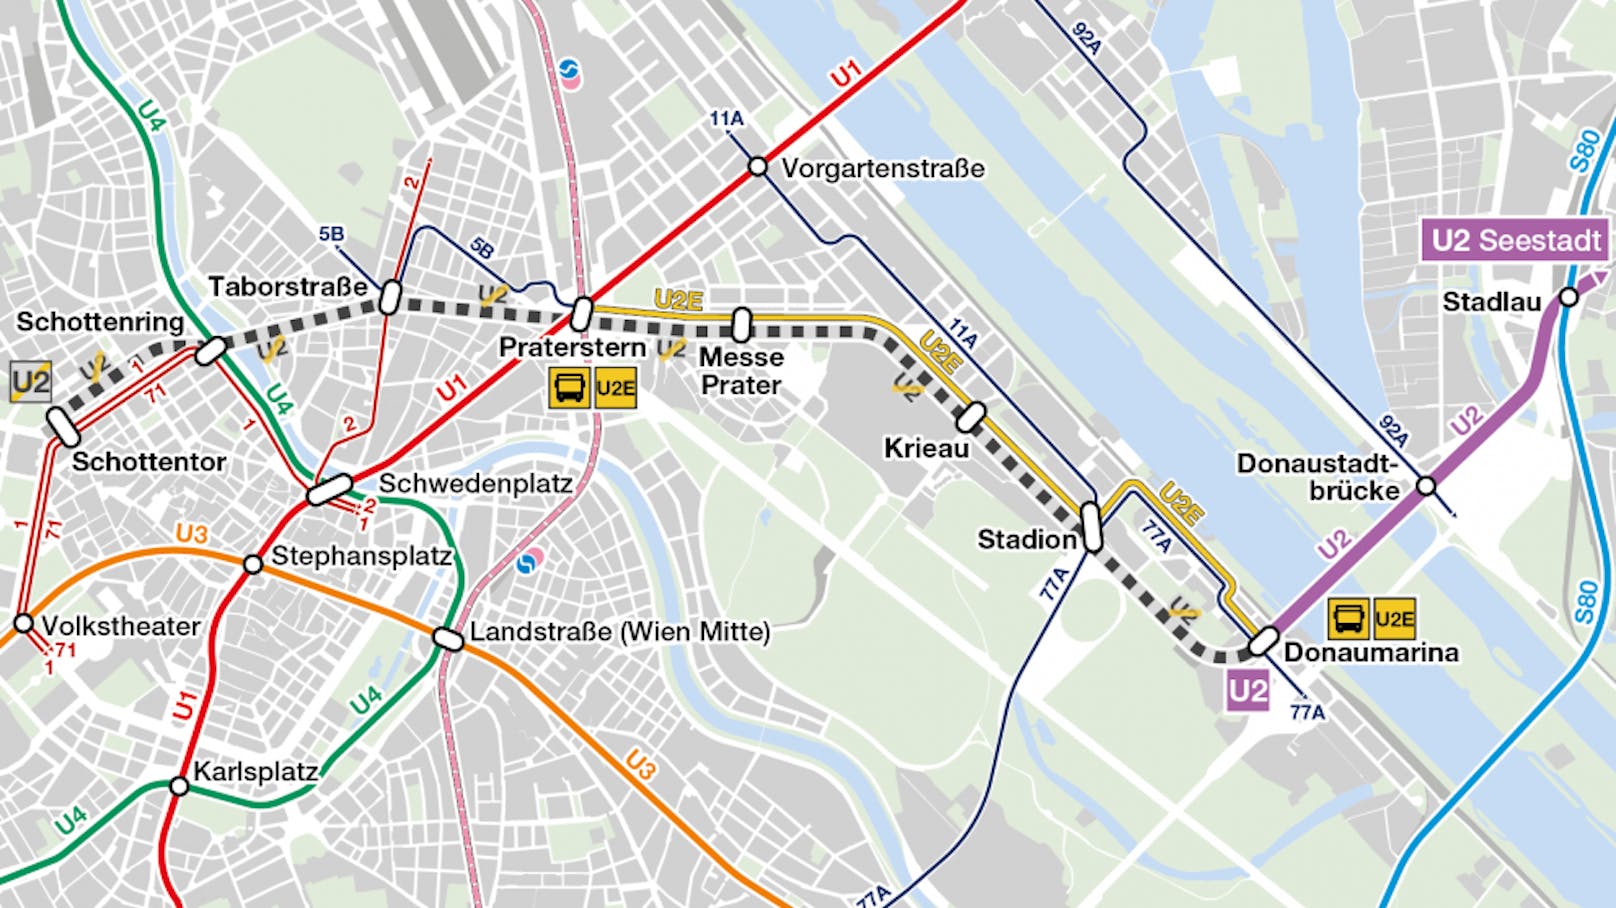 Wegen wichtiger Arbeiten fährt die U2 am Sonntag von 20:30 Uhr bis Betriebsschluss nur zwischen Seestadt und Donaumarina.